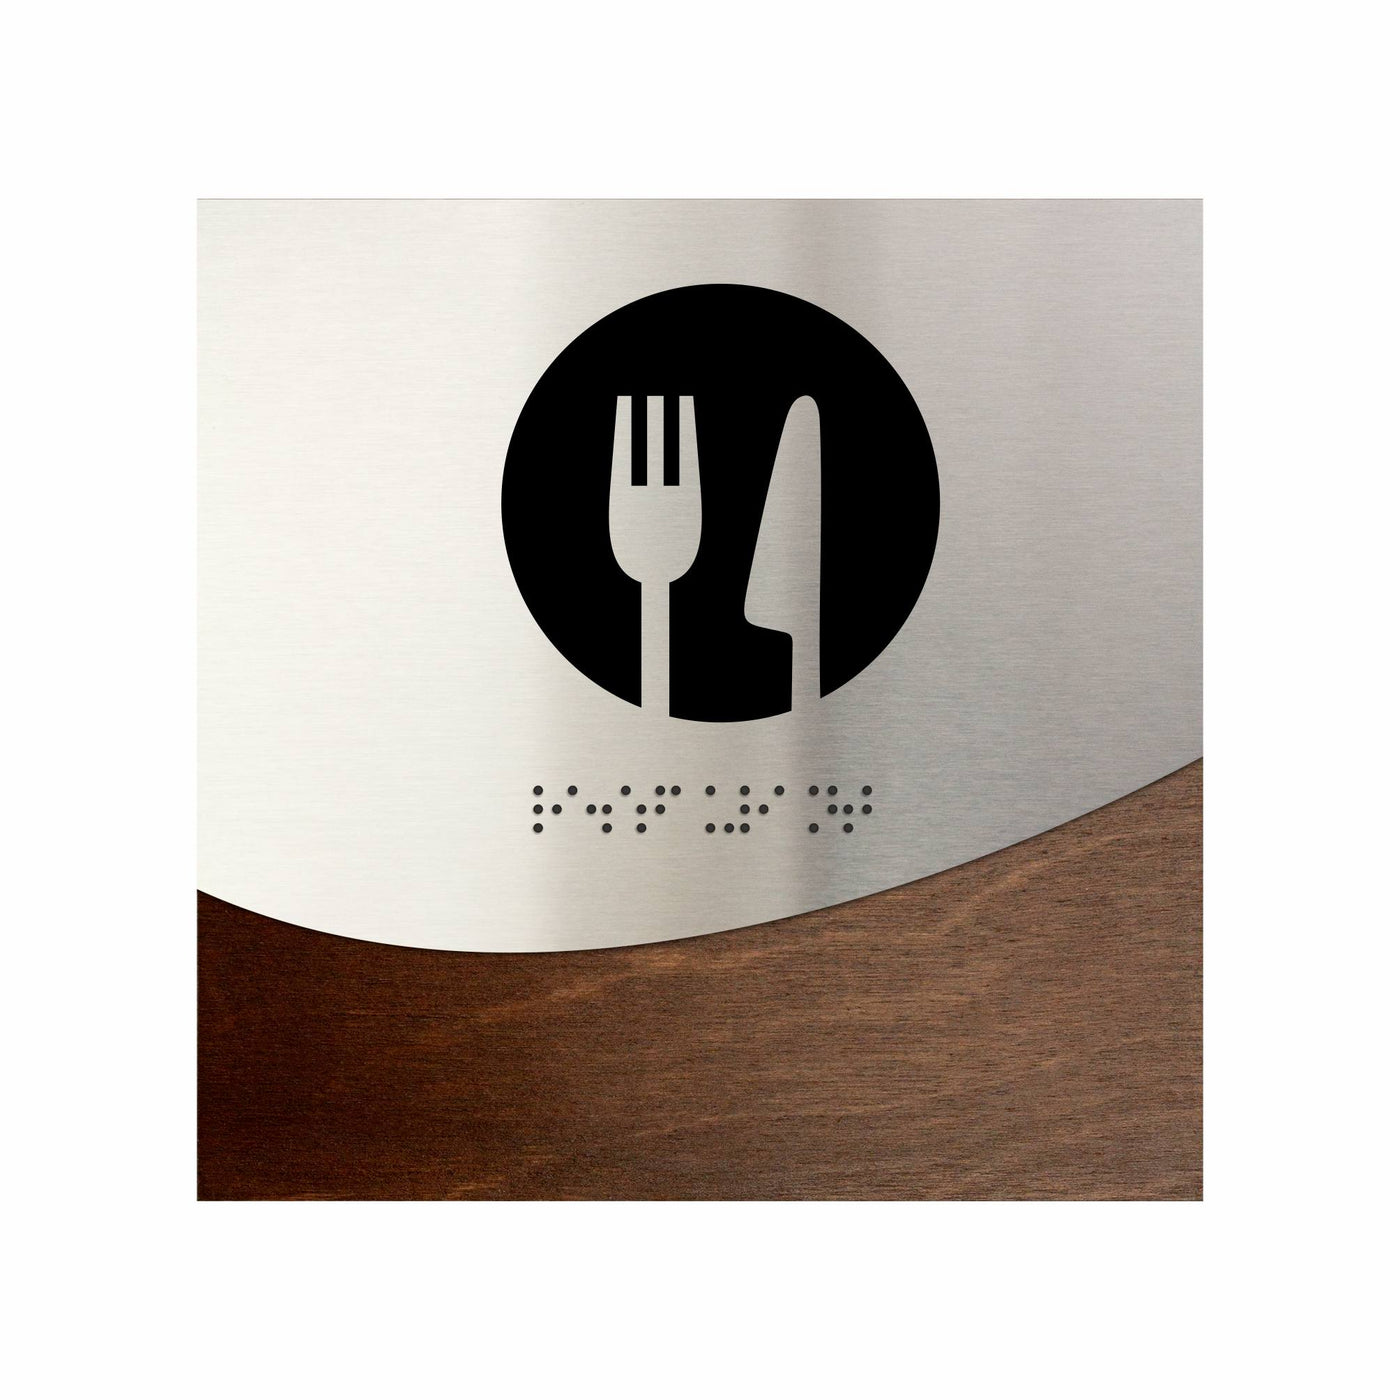 Steel Dining Room Sign - "Jure" Design